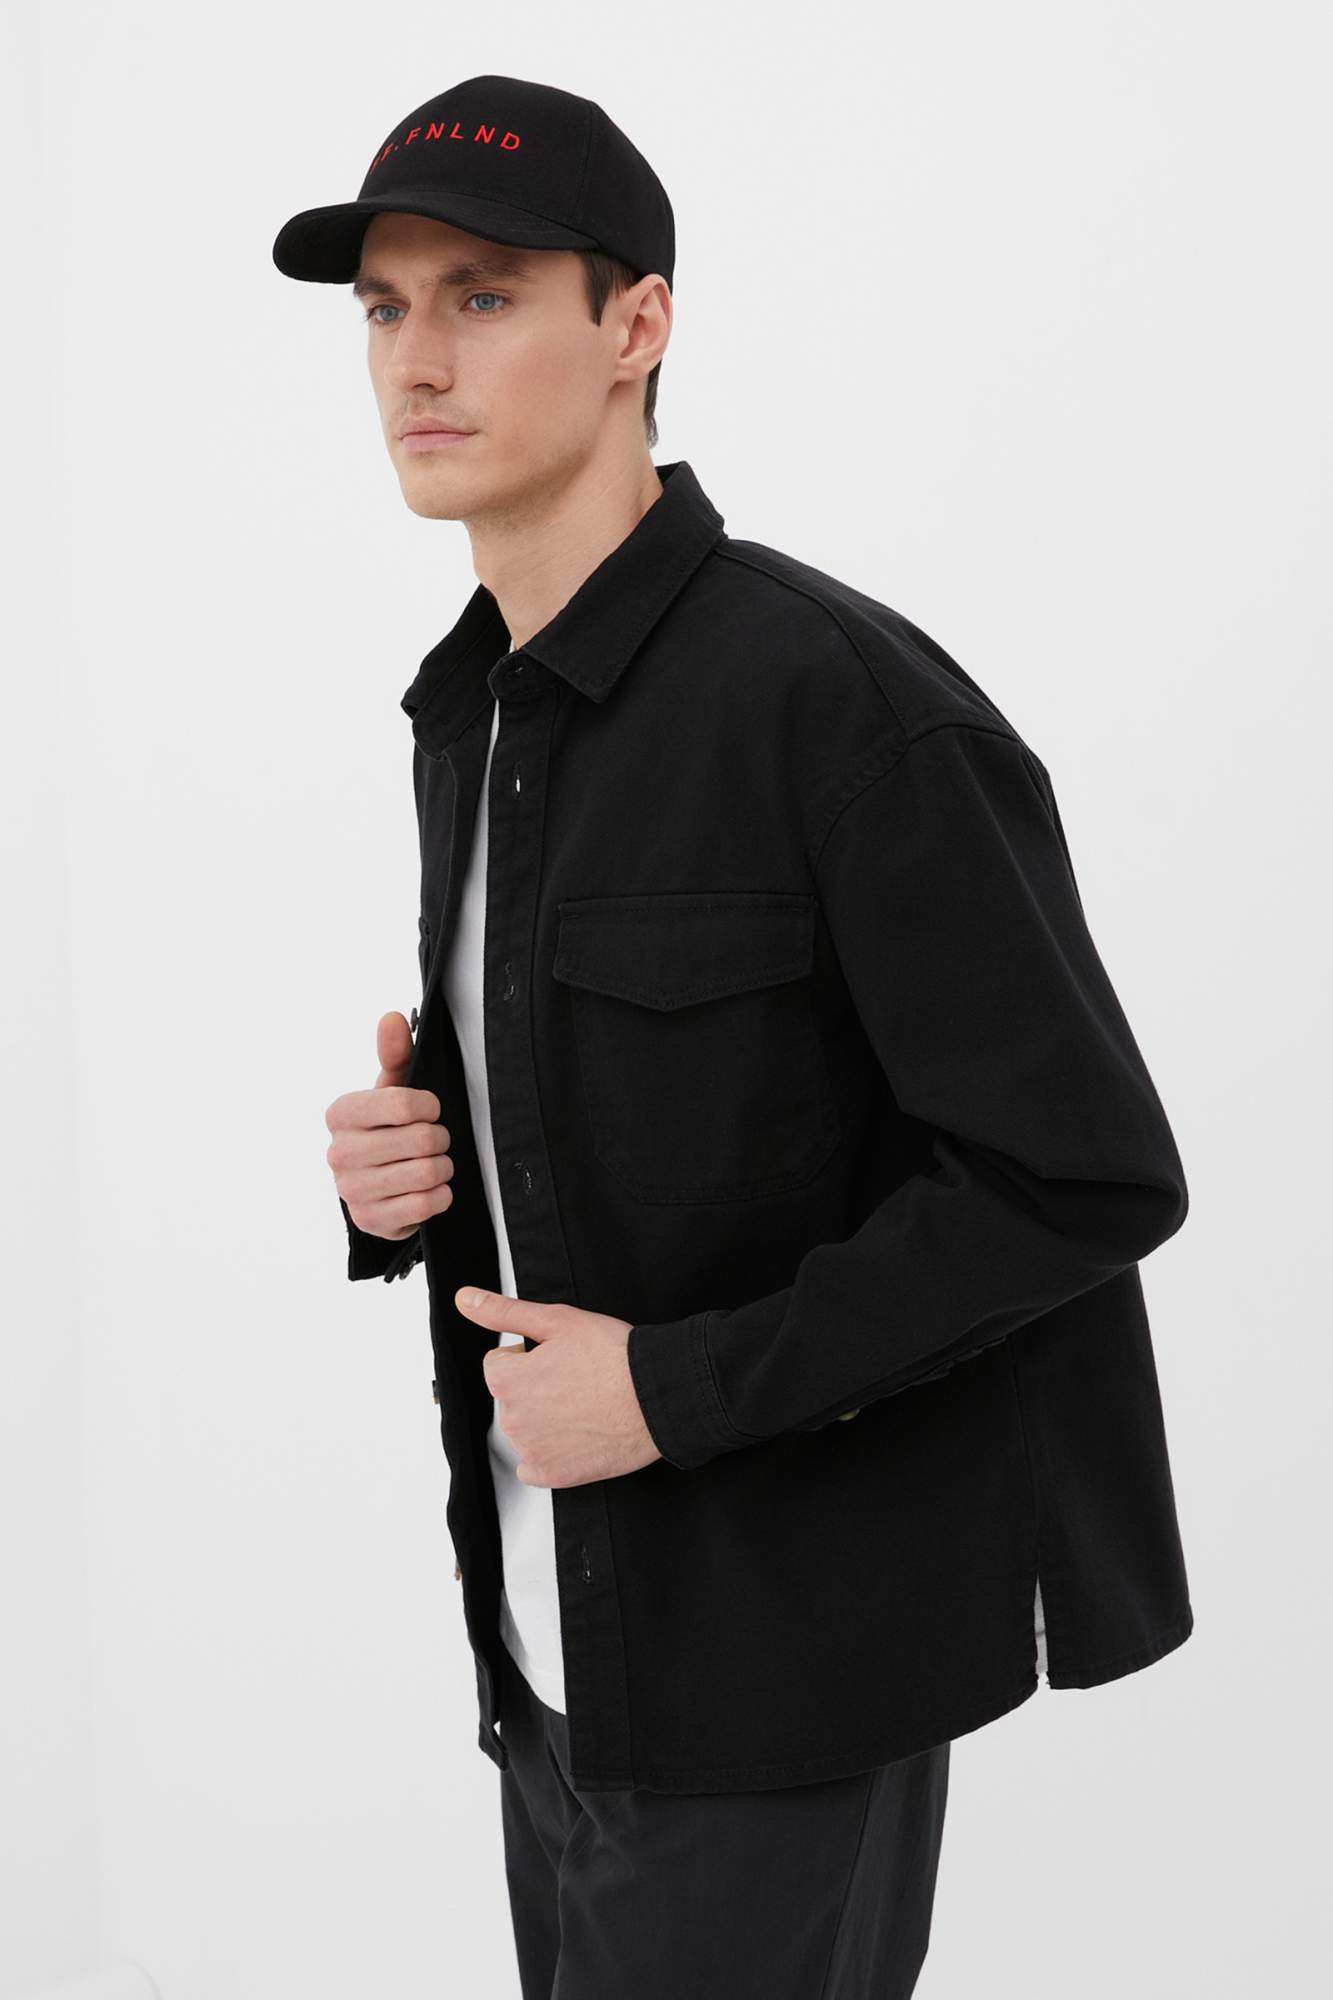 Джинсовая куртка мужская Finn Flare FBC25007 черная 3XL